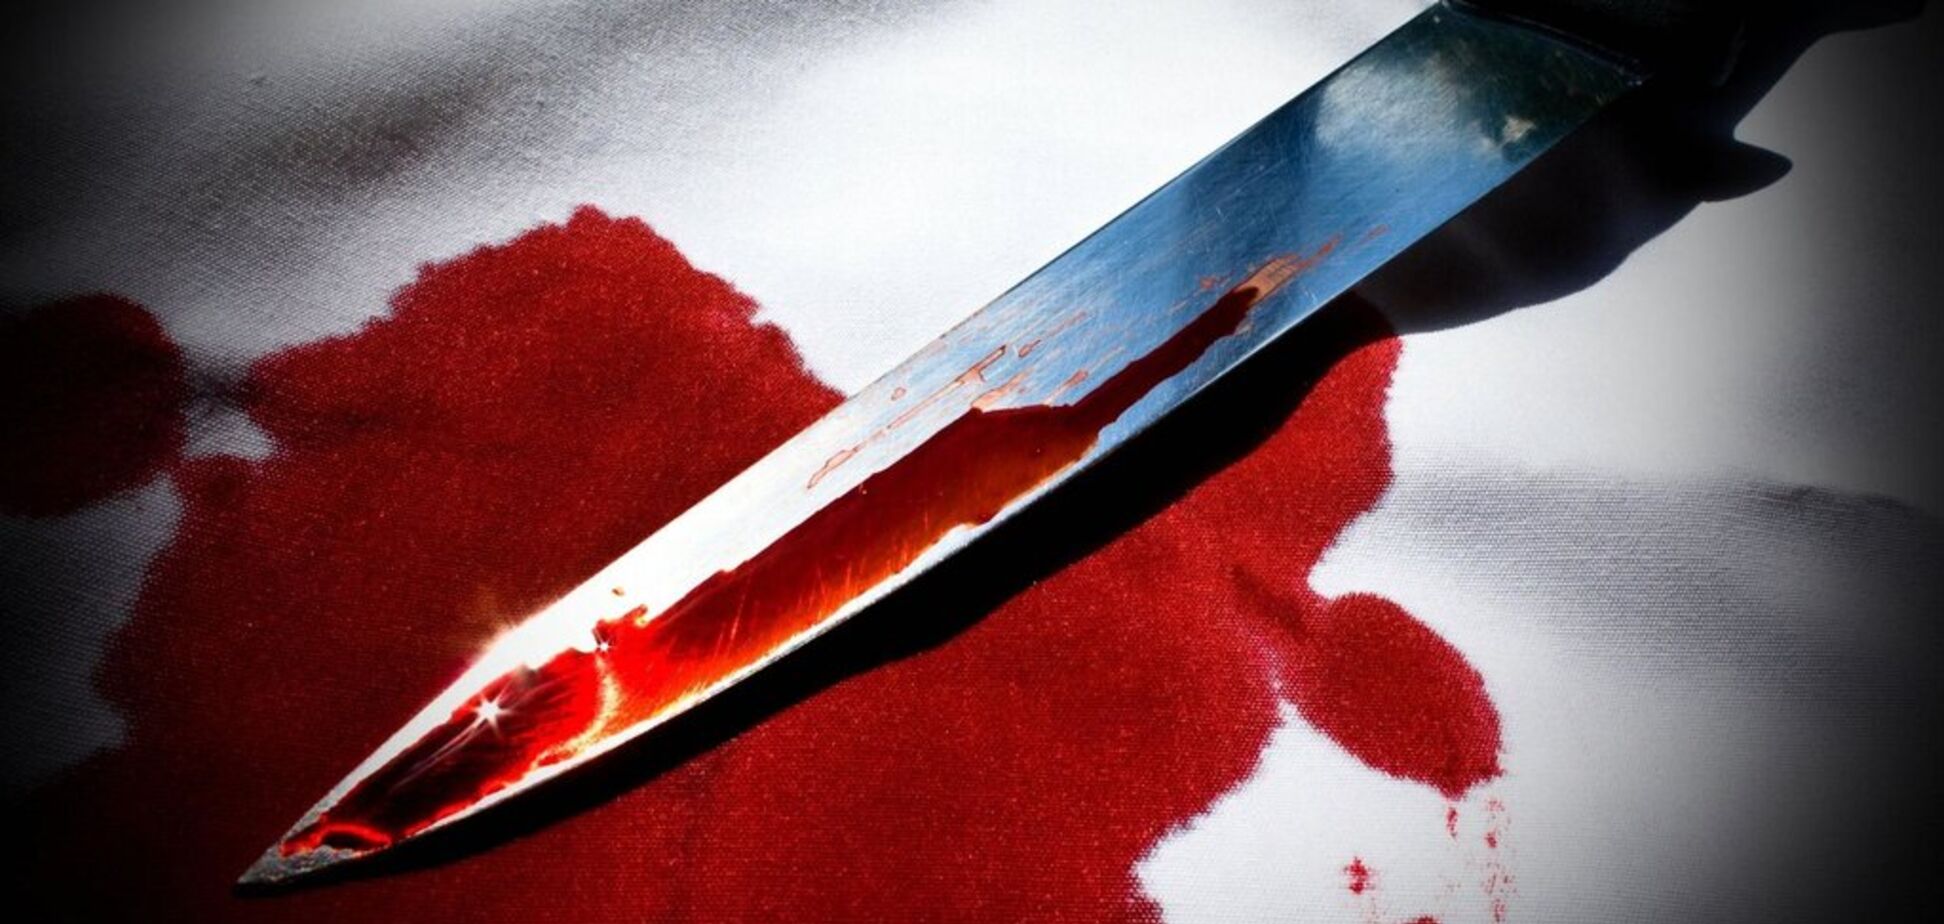 Побили і порізали ножем: в Кривому Розі відбувся звірячий напад